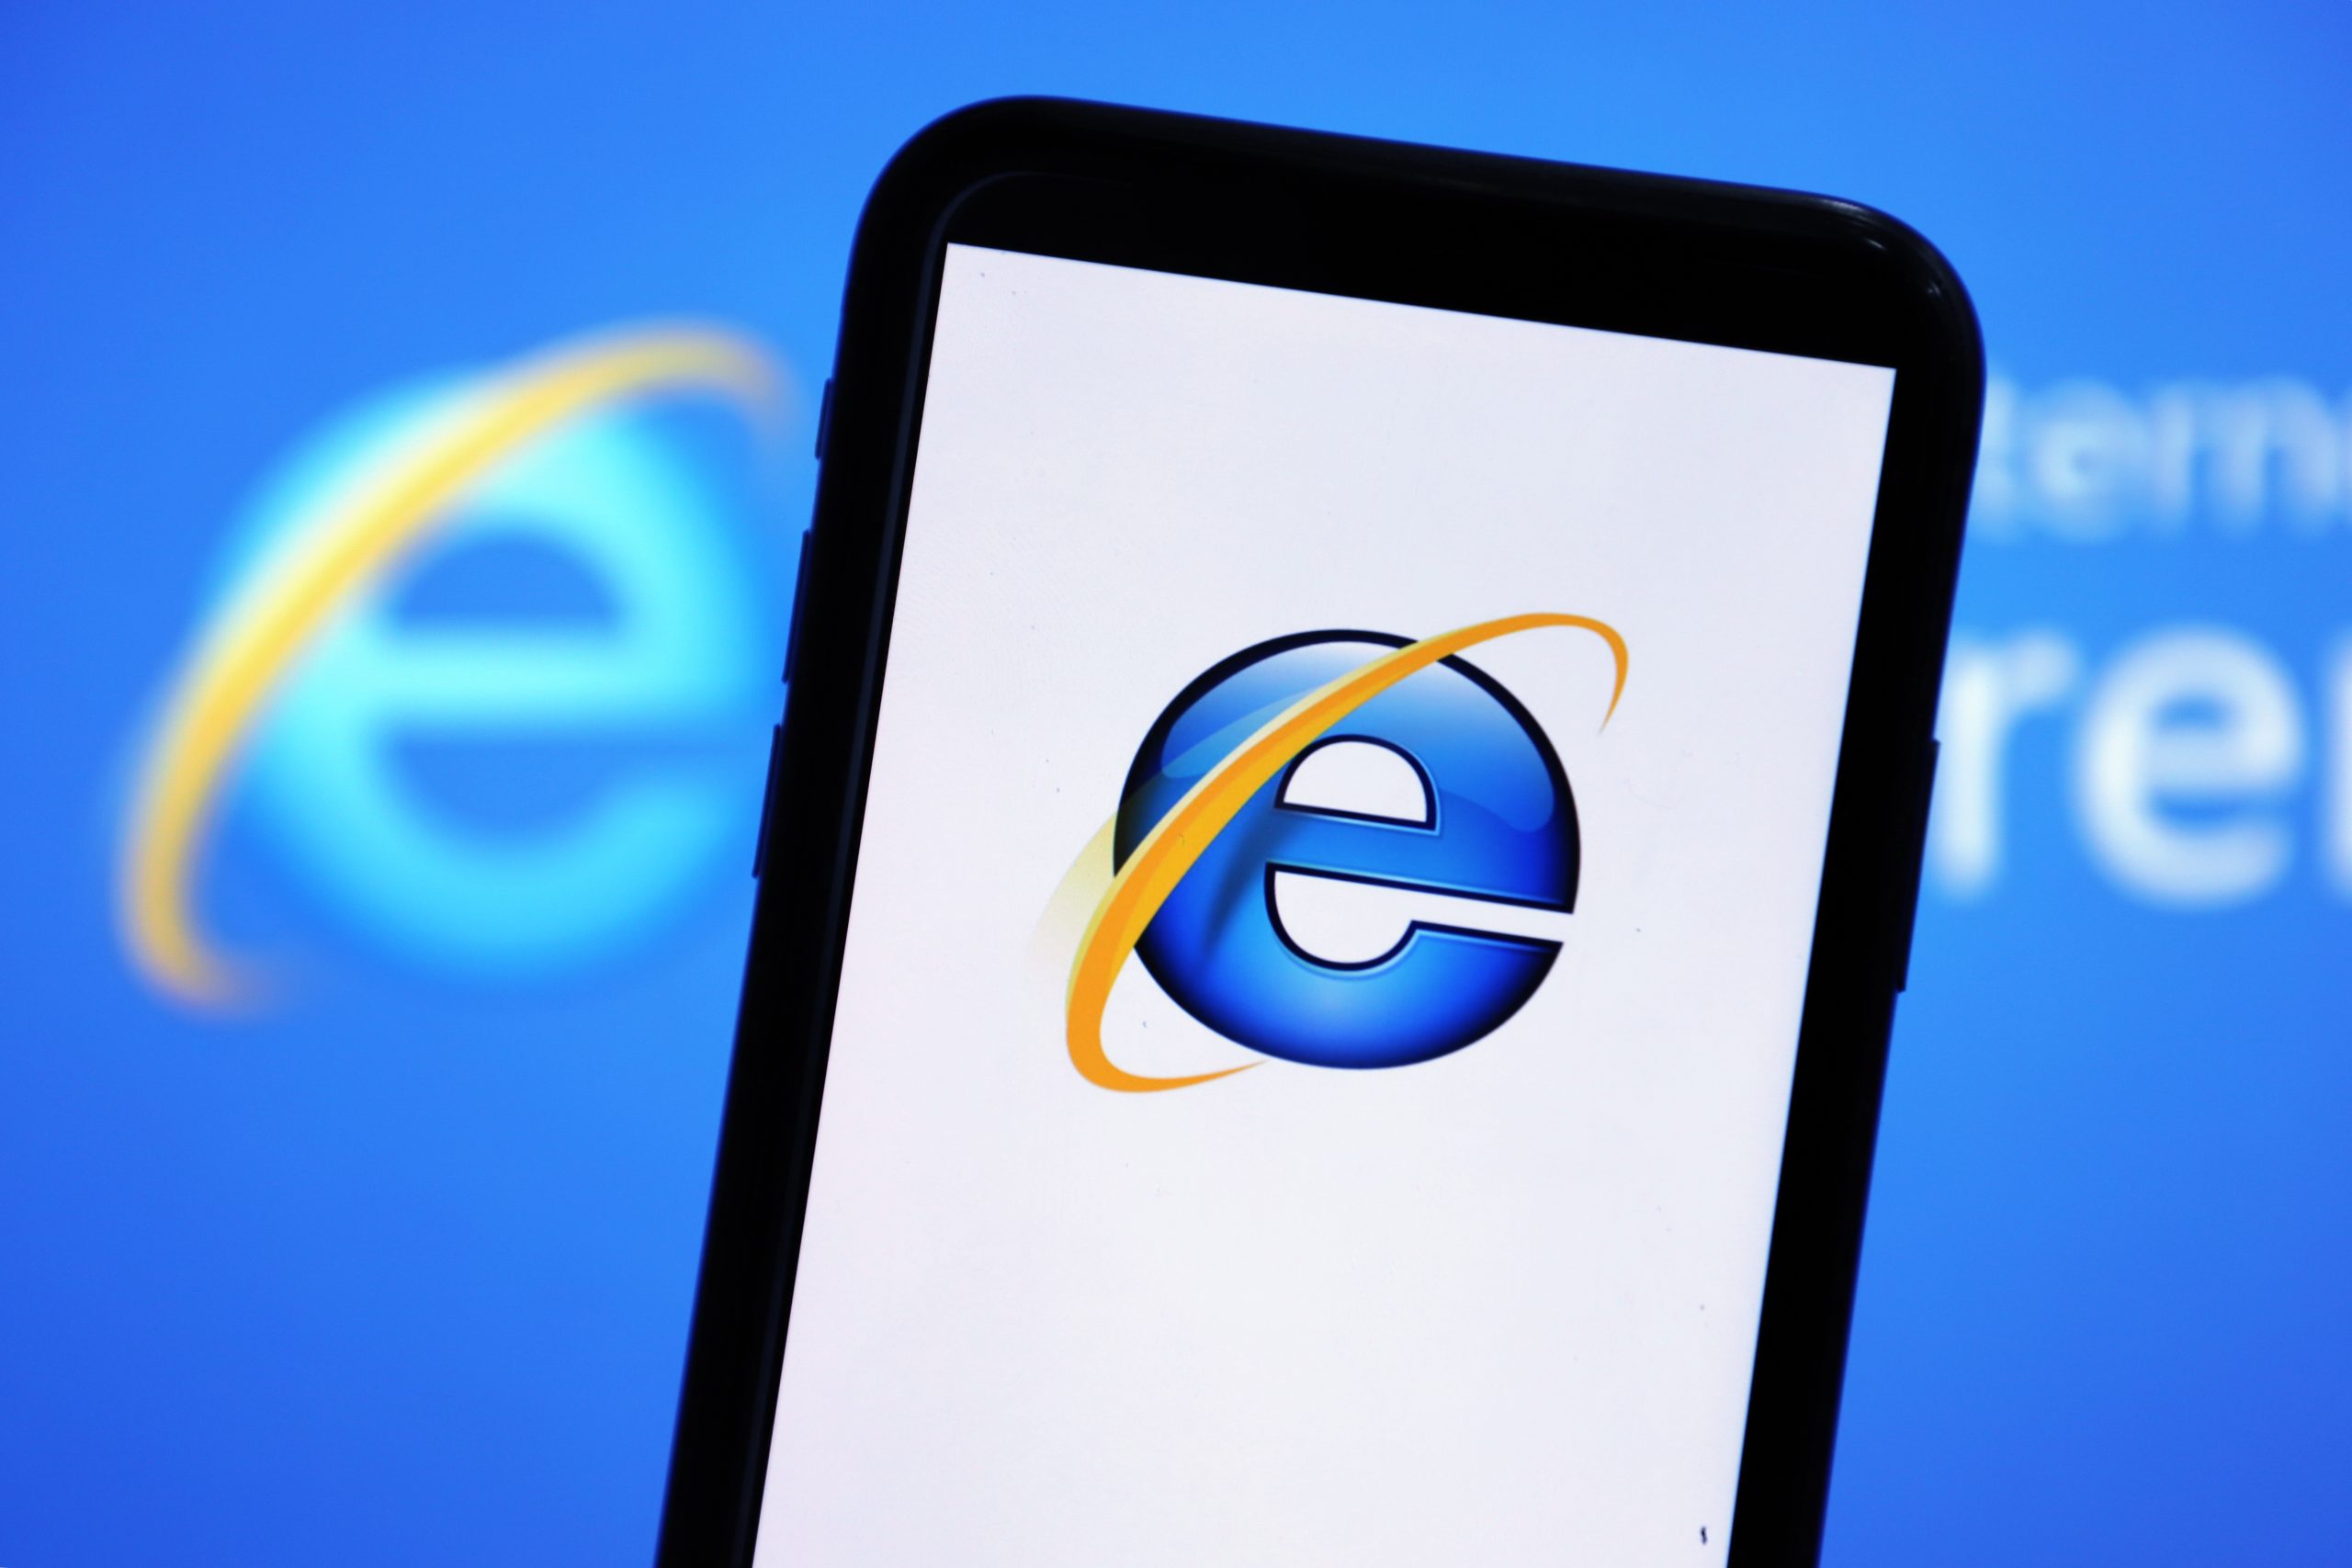 Microsoft kết thúc hỗ trợ Internet Explorer trong Windows 10 vào ngày mai